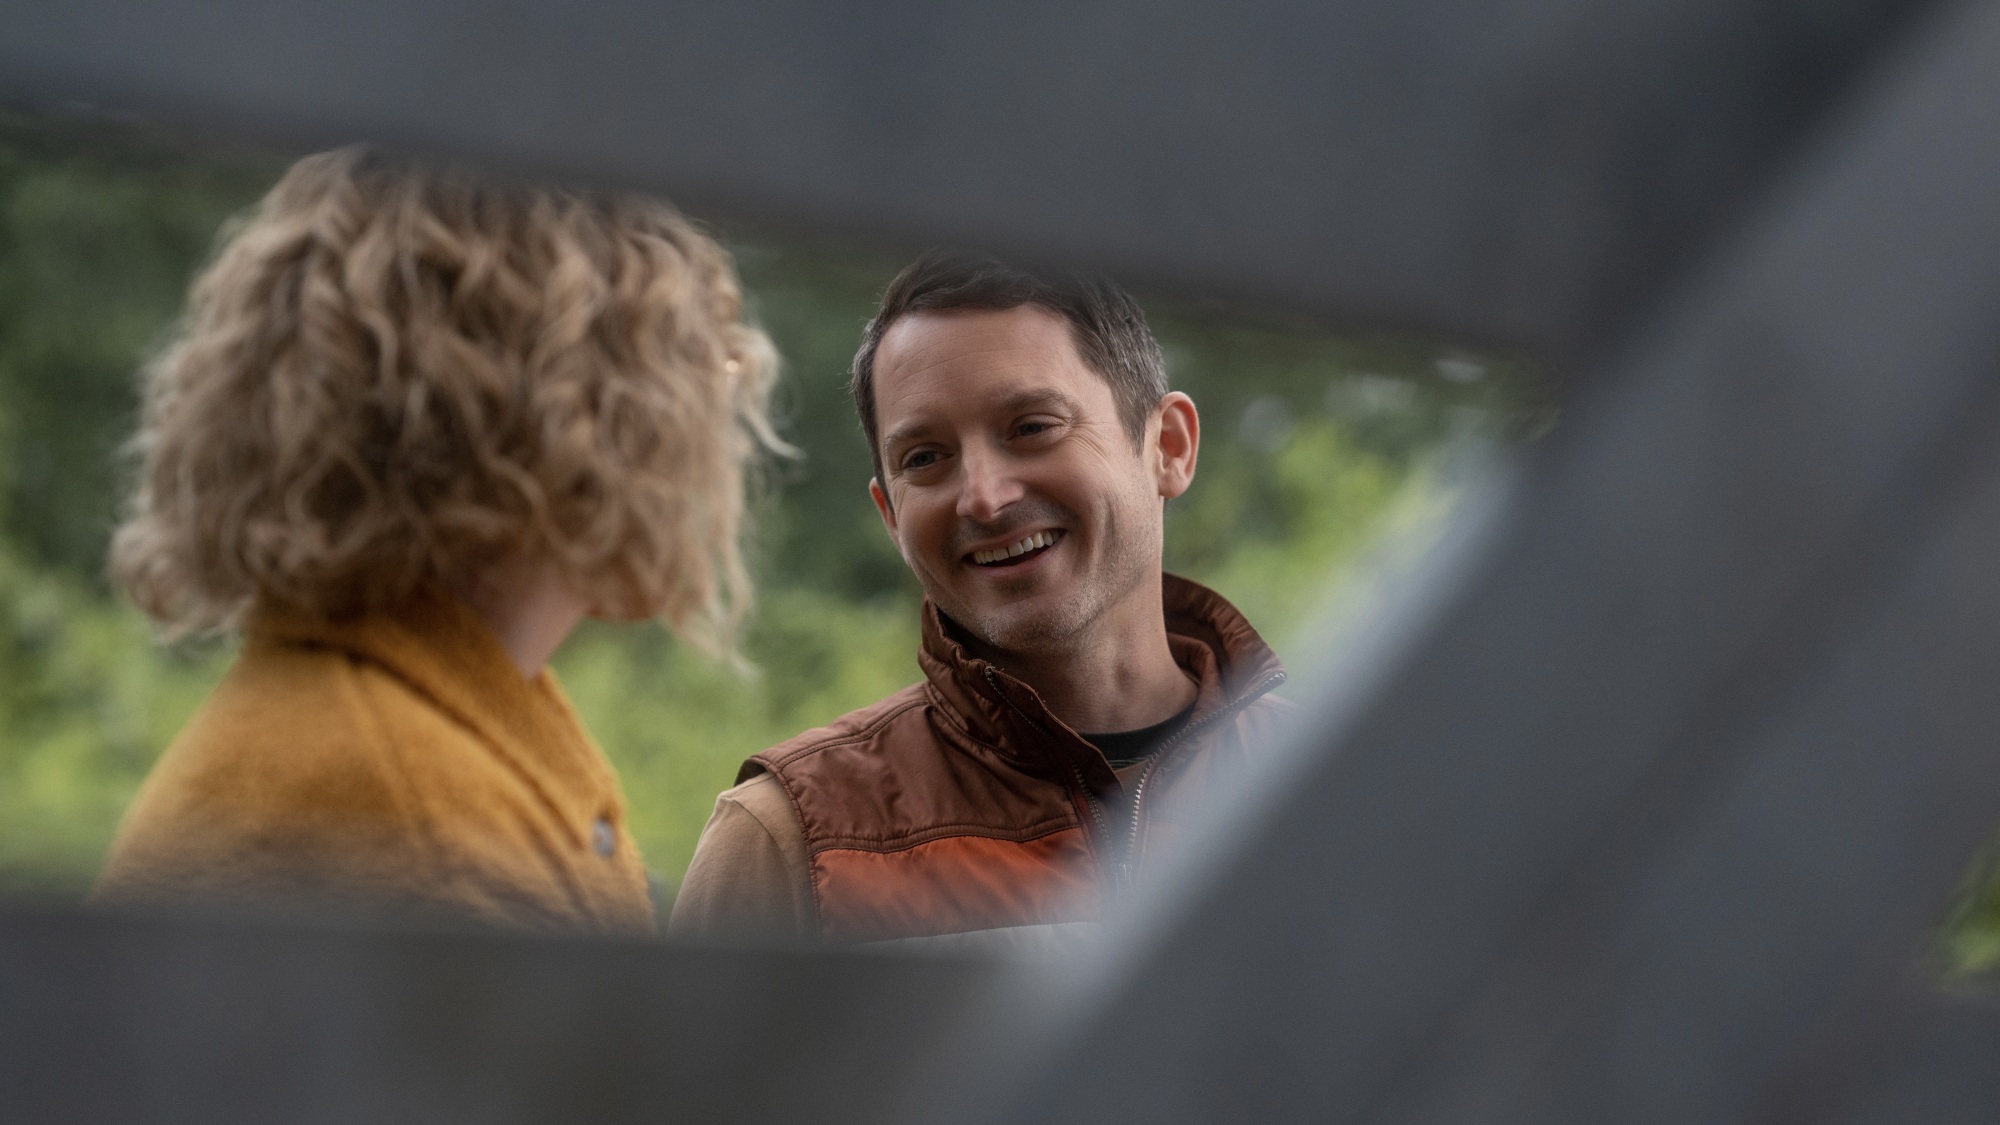 Une femme en manteau jaune et un homme souriant en gilet marron et orange regardent à travers les lattes d'une clôture.